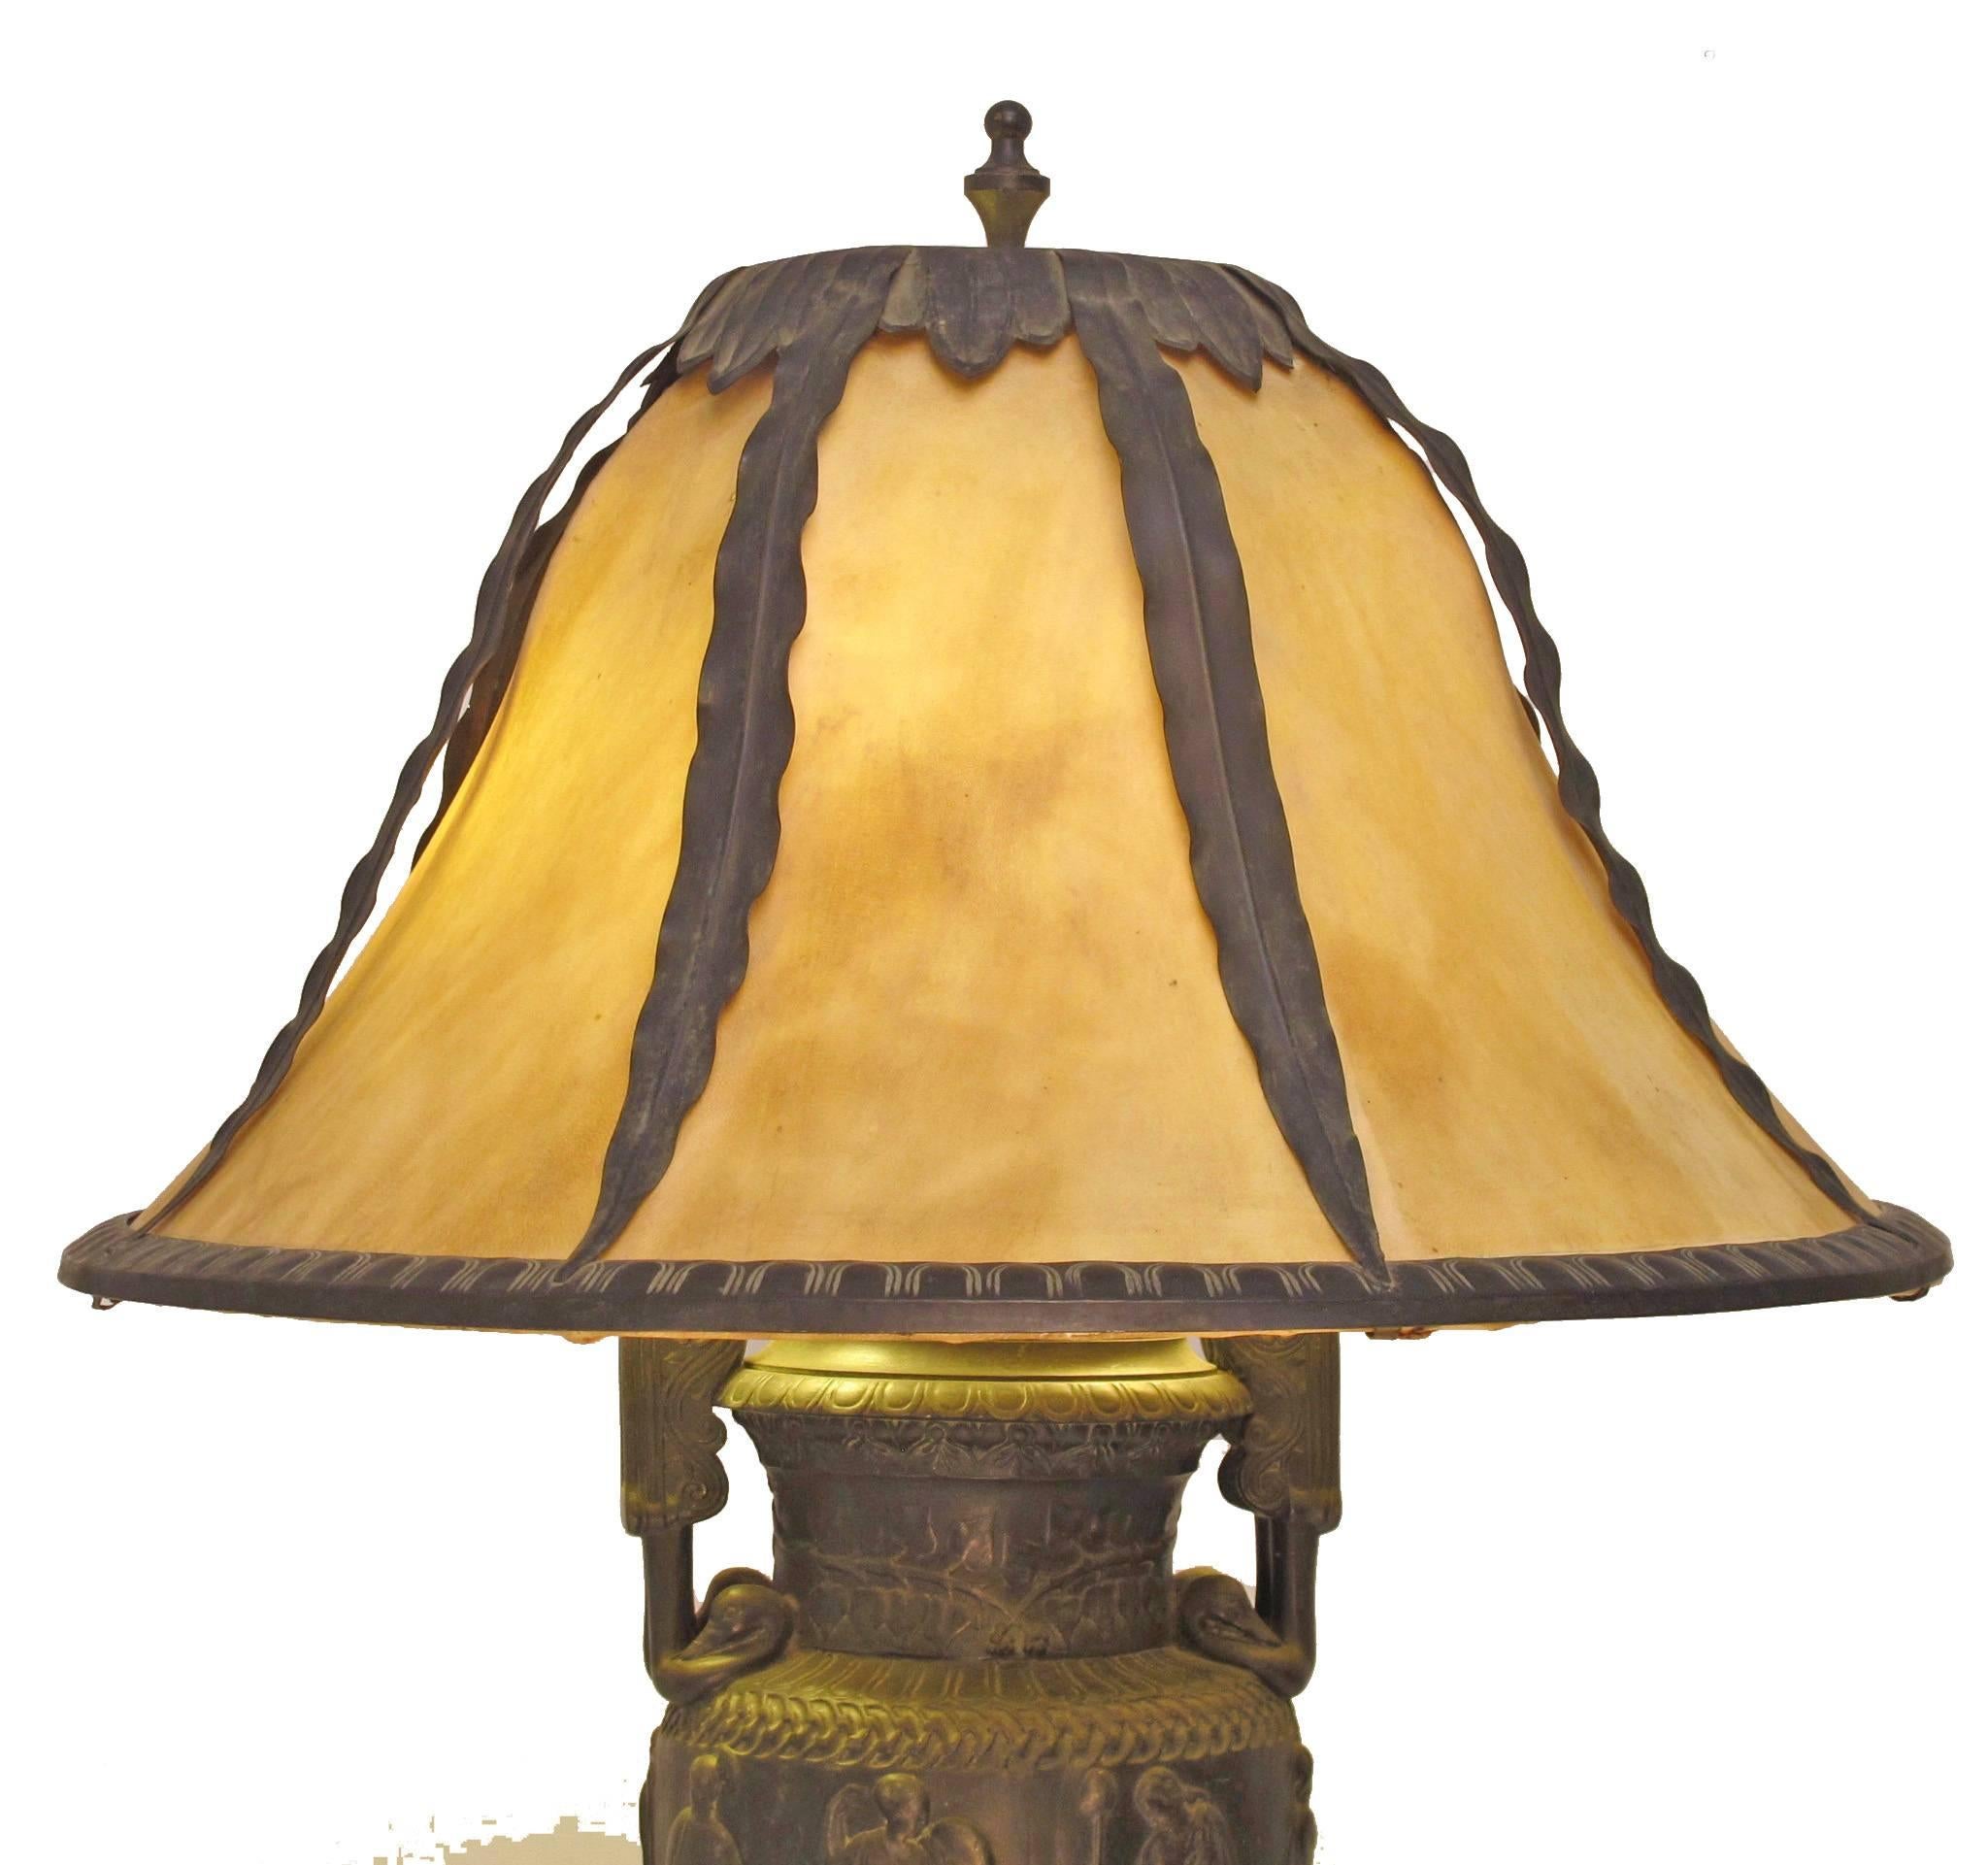 Neoclassical Revival Neoclassical Urn Table Lamp